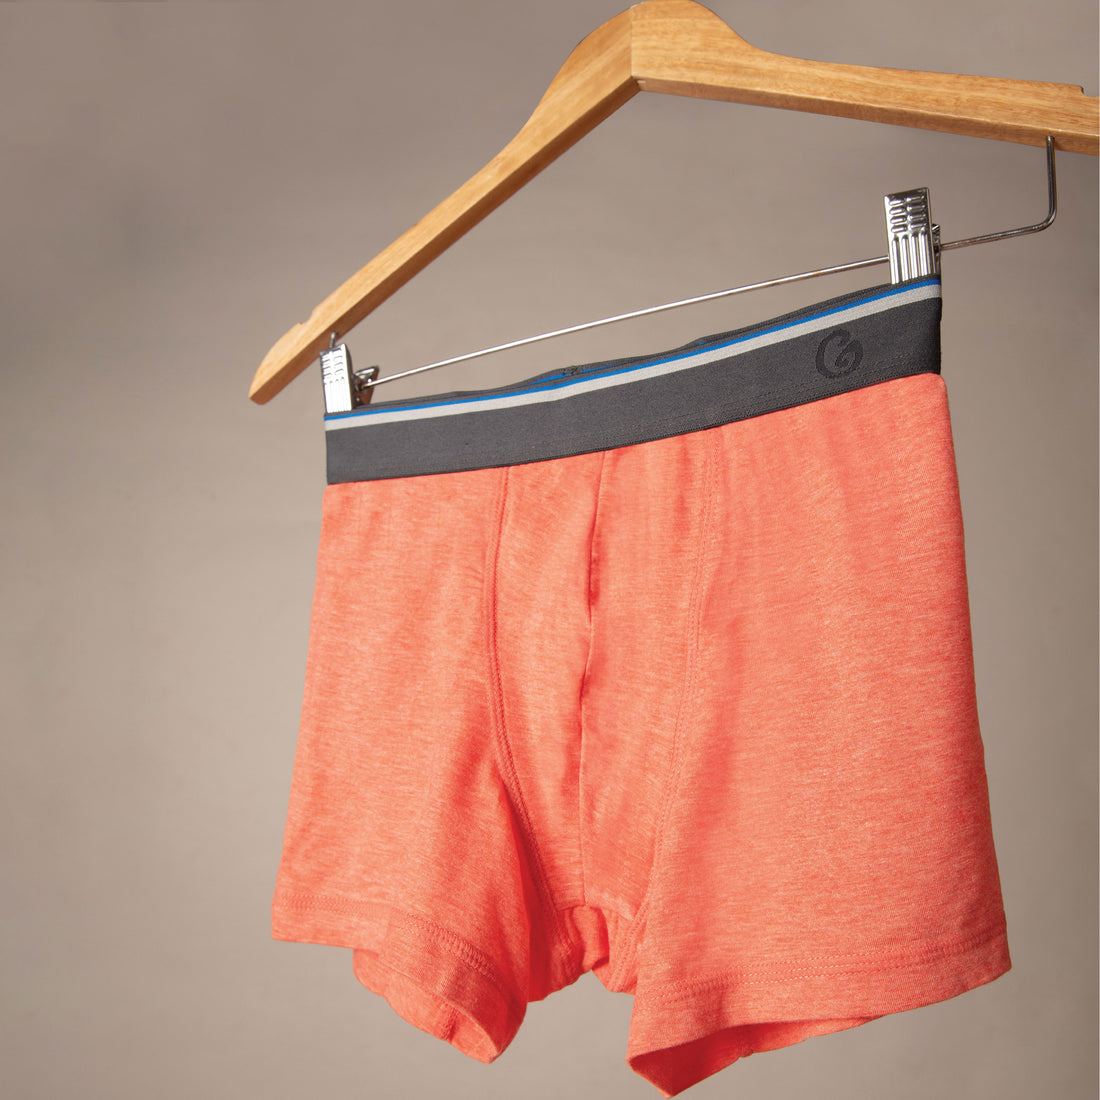 Which Underwear is Best for Men? – Gloot